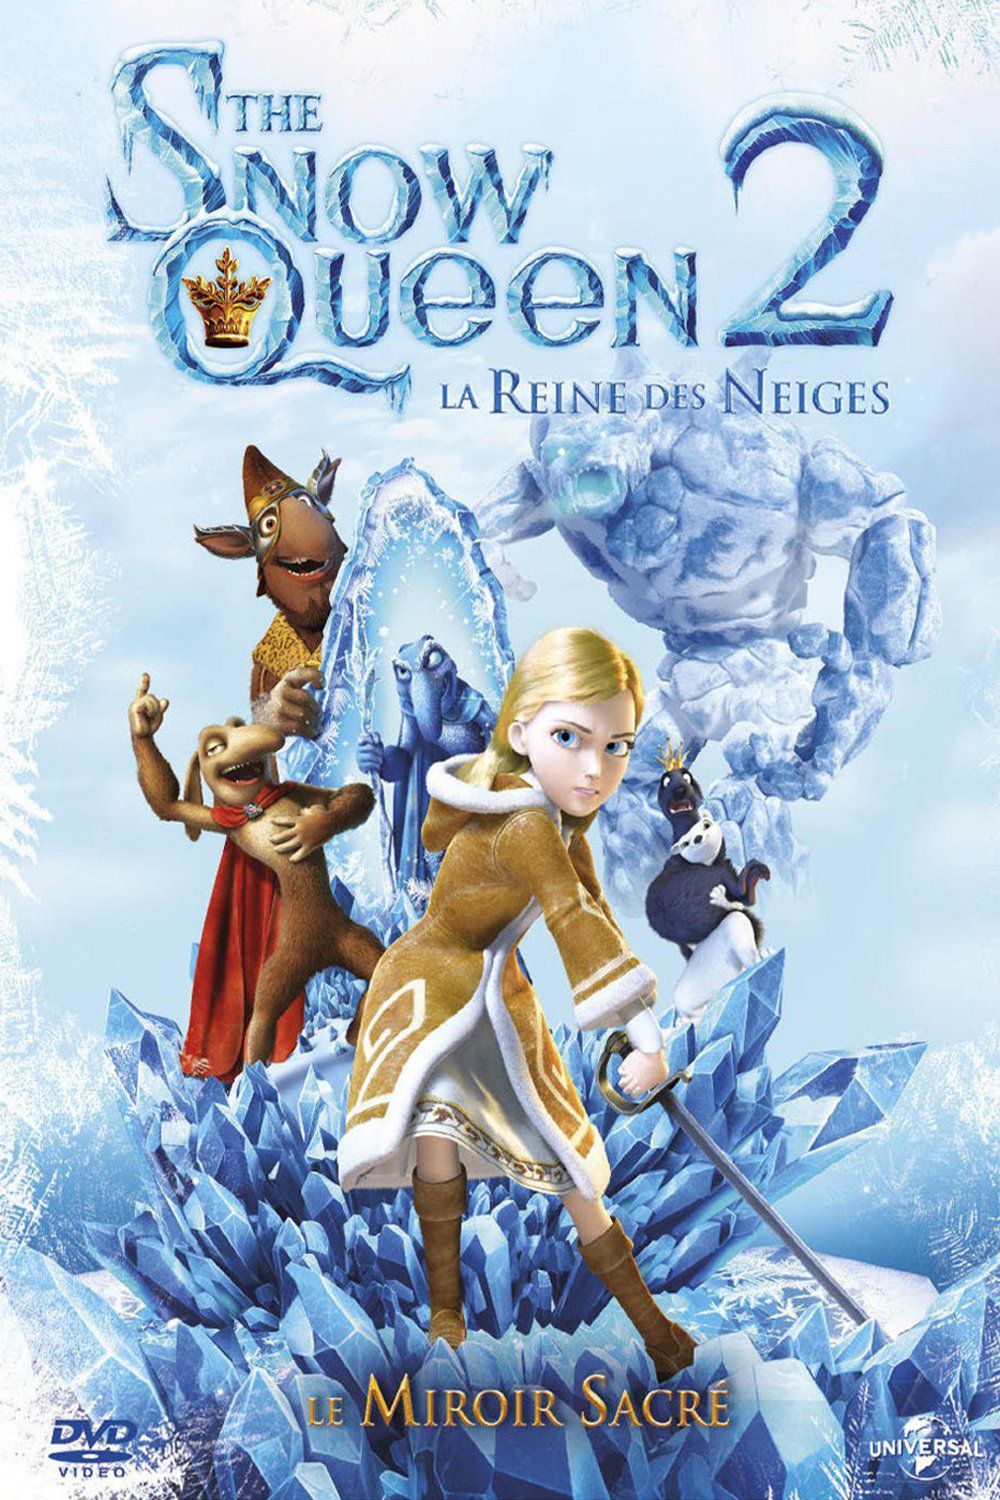 The Snow Queen 2 - Le Miroir sacré - Long-métrage d'animation (2015) streaming VF gratuit complet